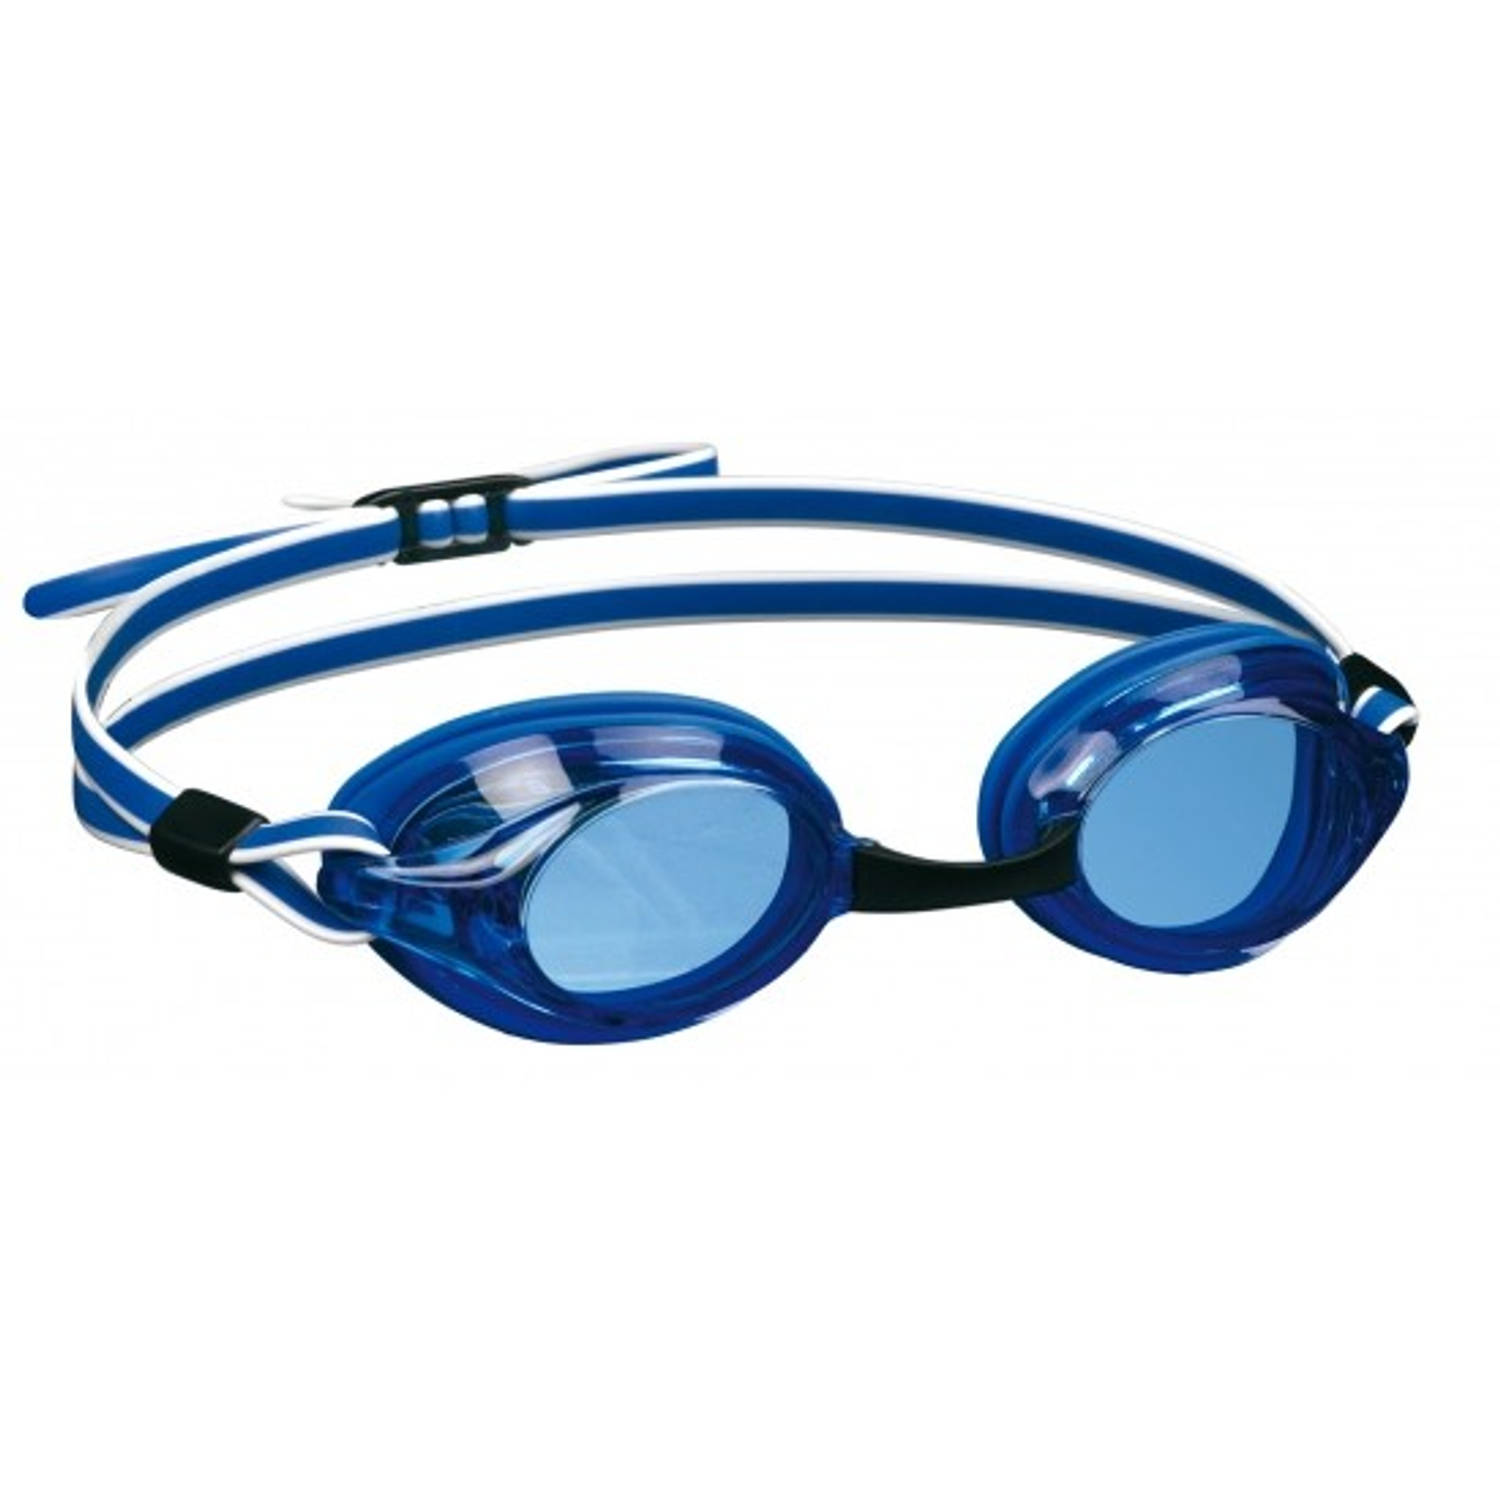 Beco Witte Zwembril Voor Volwassenen - Blauw